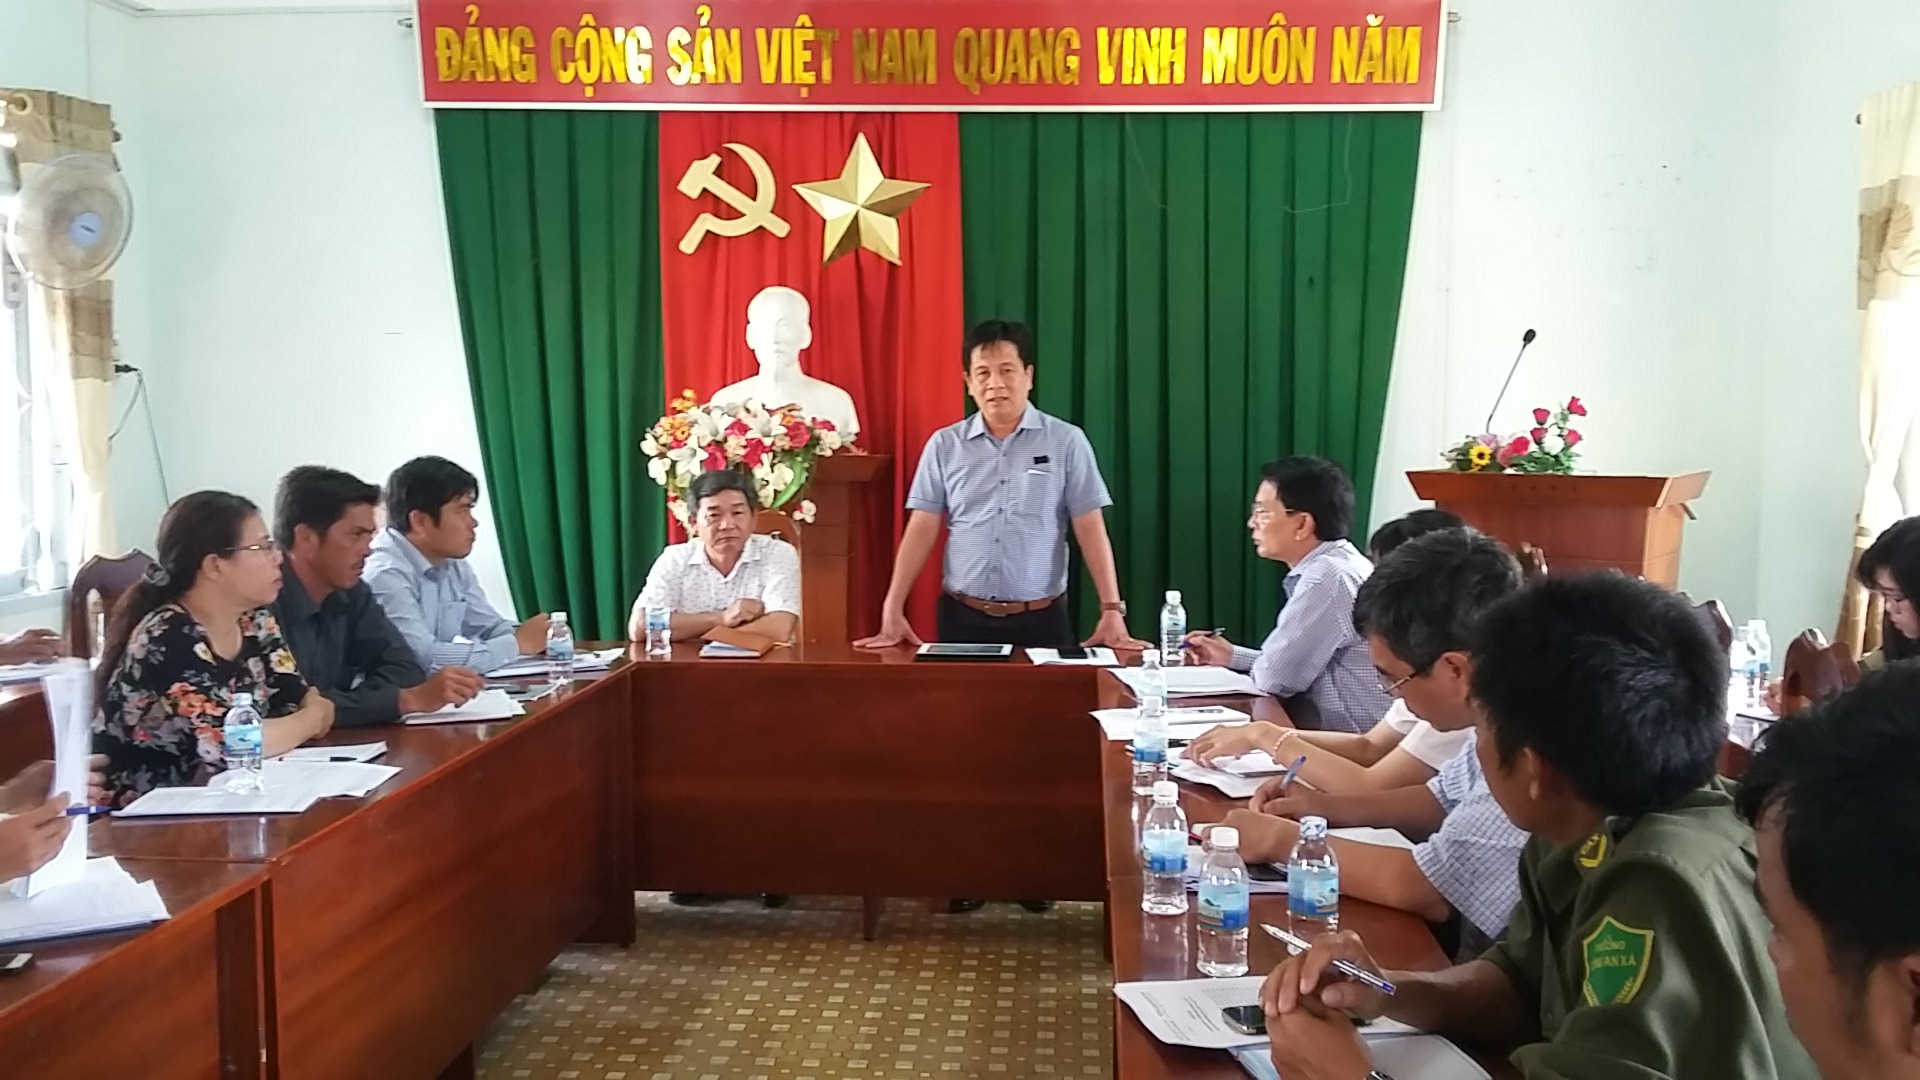 Đồng chí Hồ Văn Mừng làm việc với Đảng ủy xã Vạn Thạnh